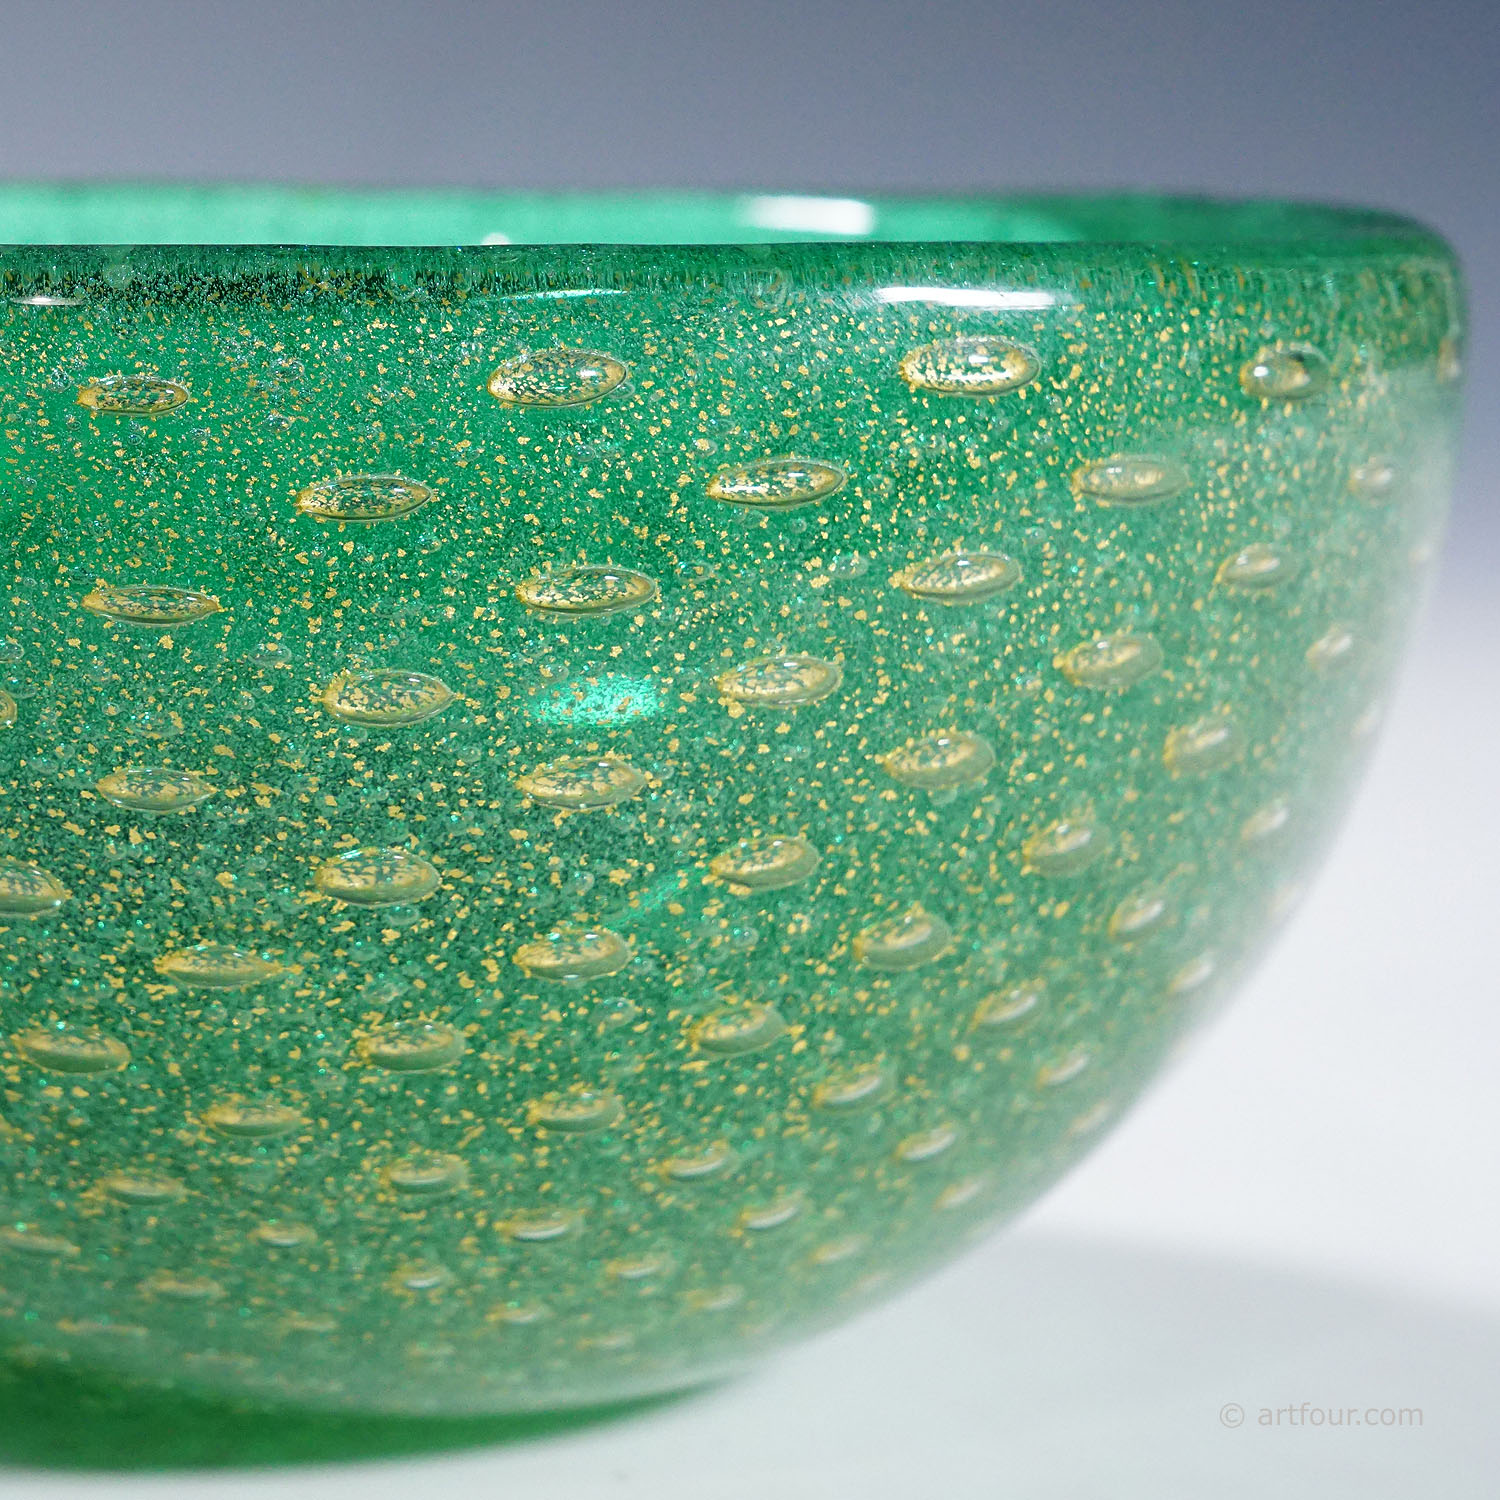 Small Bowl in Green Sommerso Glass, Carlo Scarpa for Venini Murano 1930s